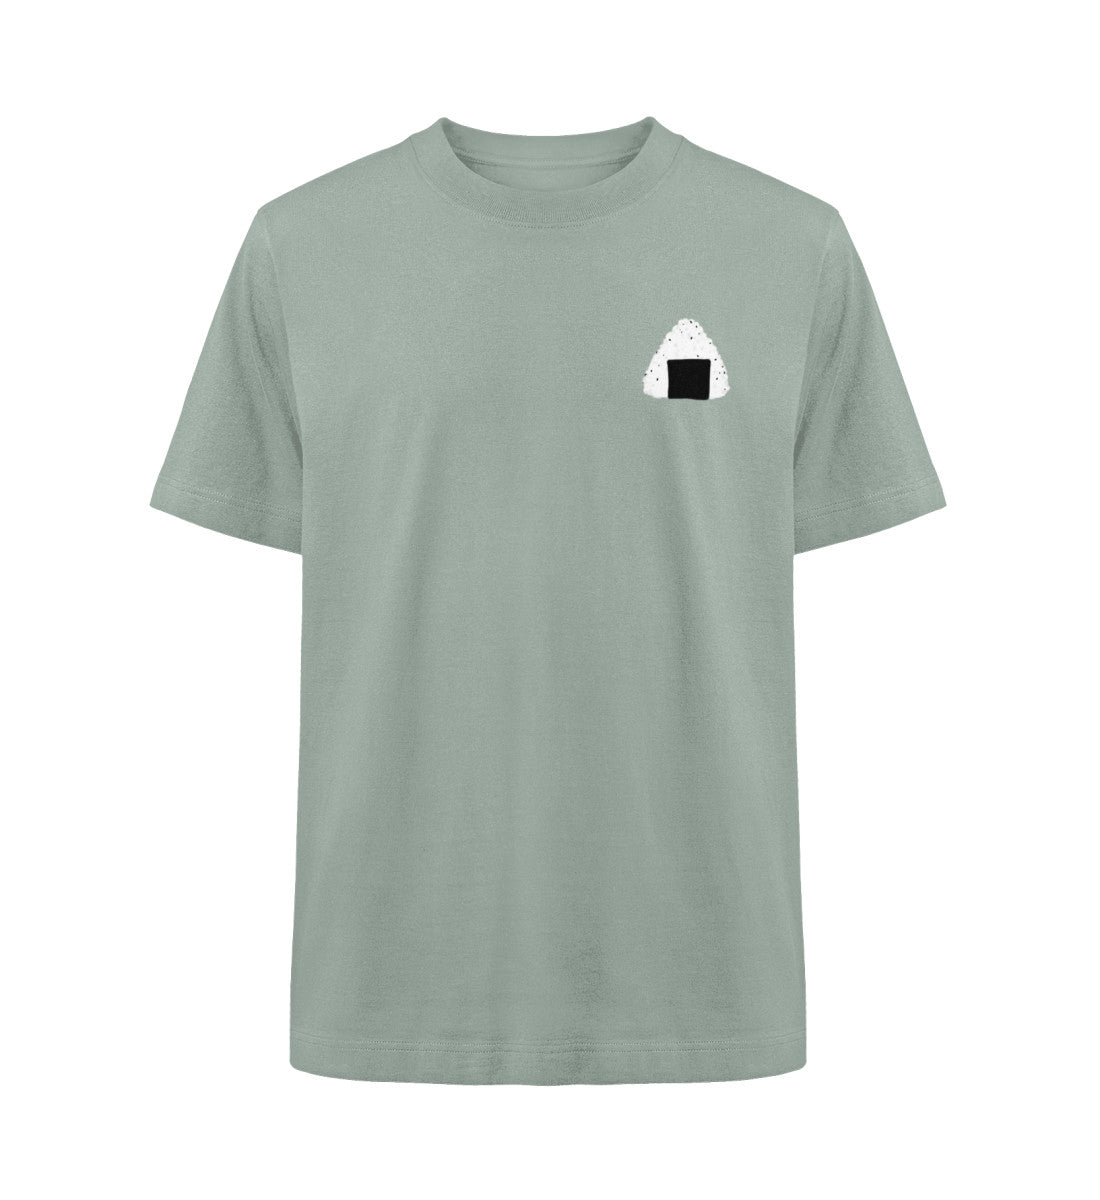 Onigiri- Reis T-Shirt mint